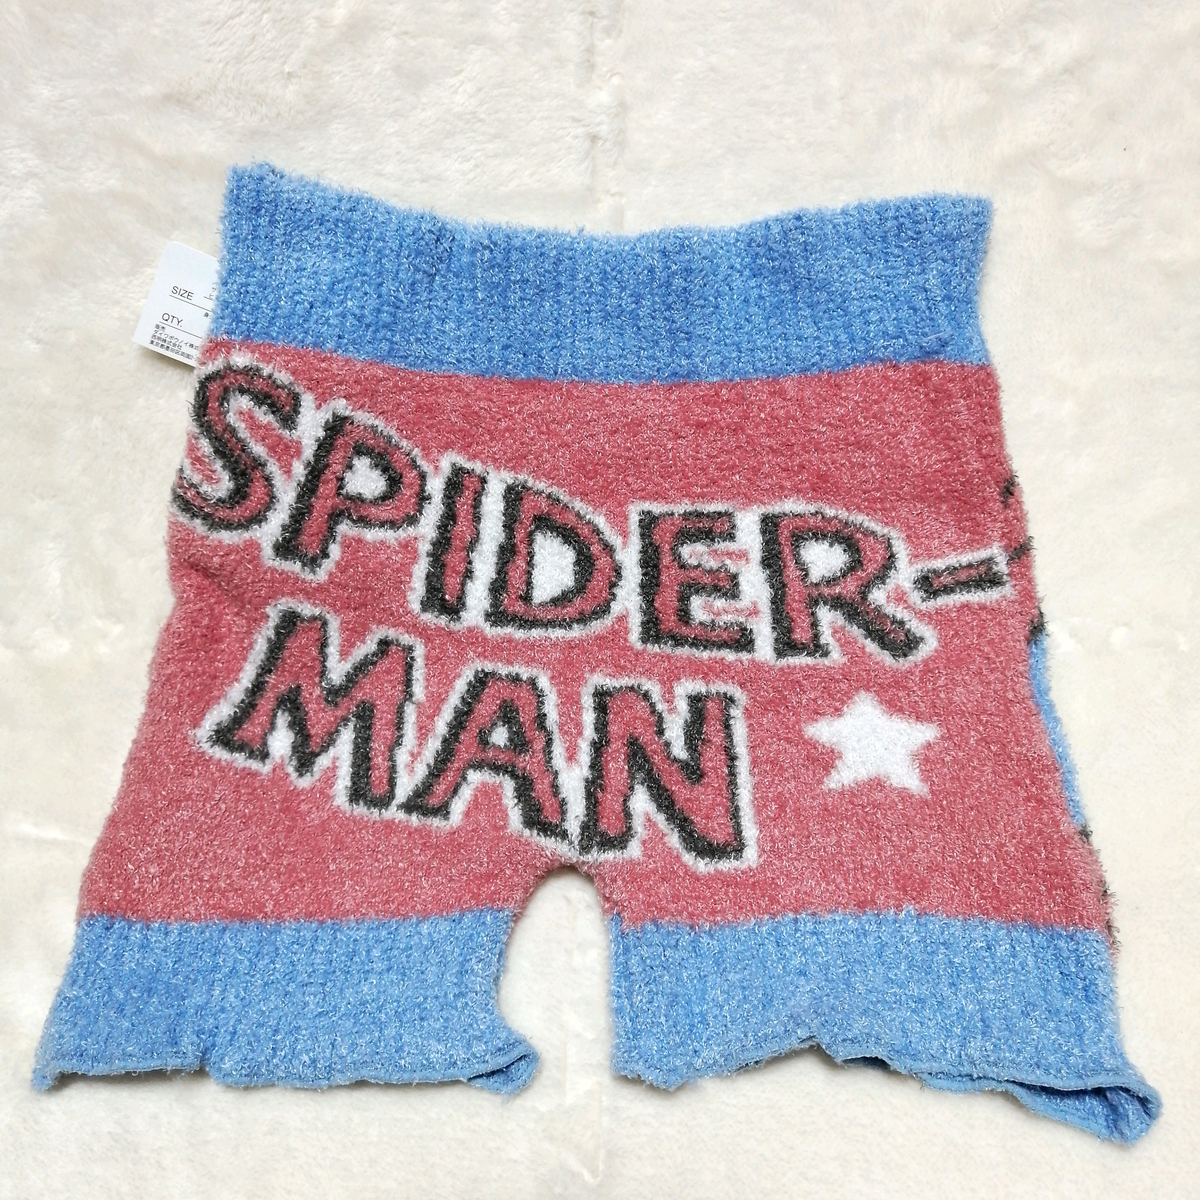 スパイダーマン マーベル ふわふわパンツ M-L あったかパンツ もこもこパンツ 雑貨 レディース キャラクター 毛糸のパンツ_画像3